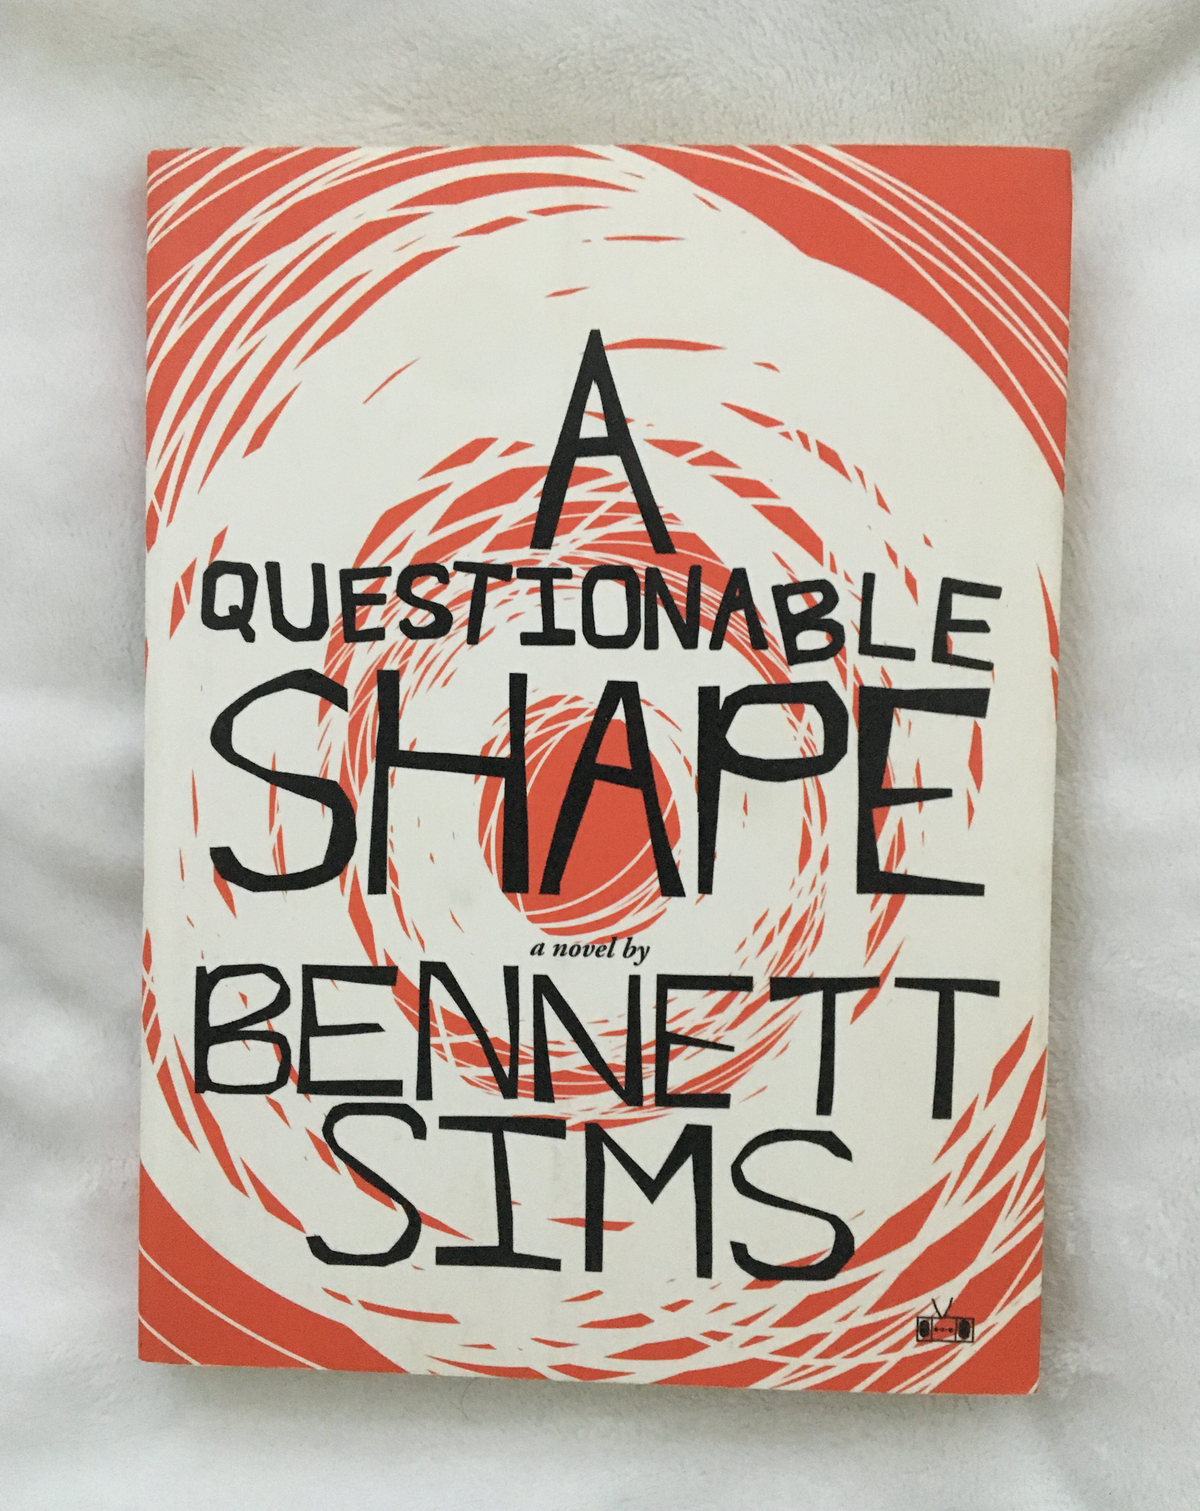 A Questionable Shape by Bennett Sims, book, Ten Dollar Books, Ten Dollar Books